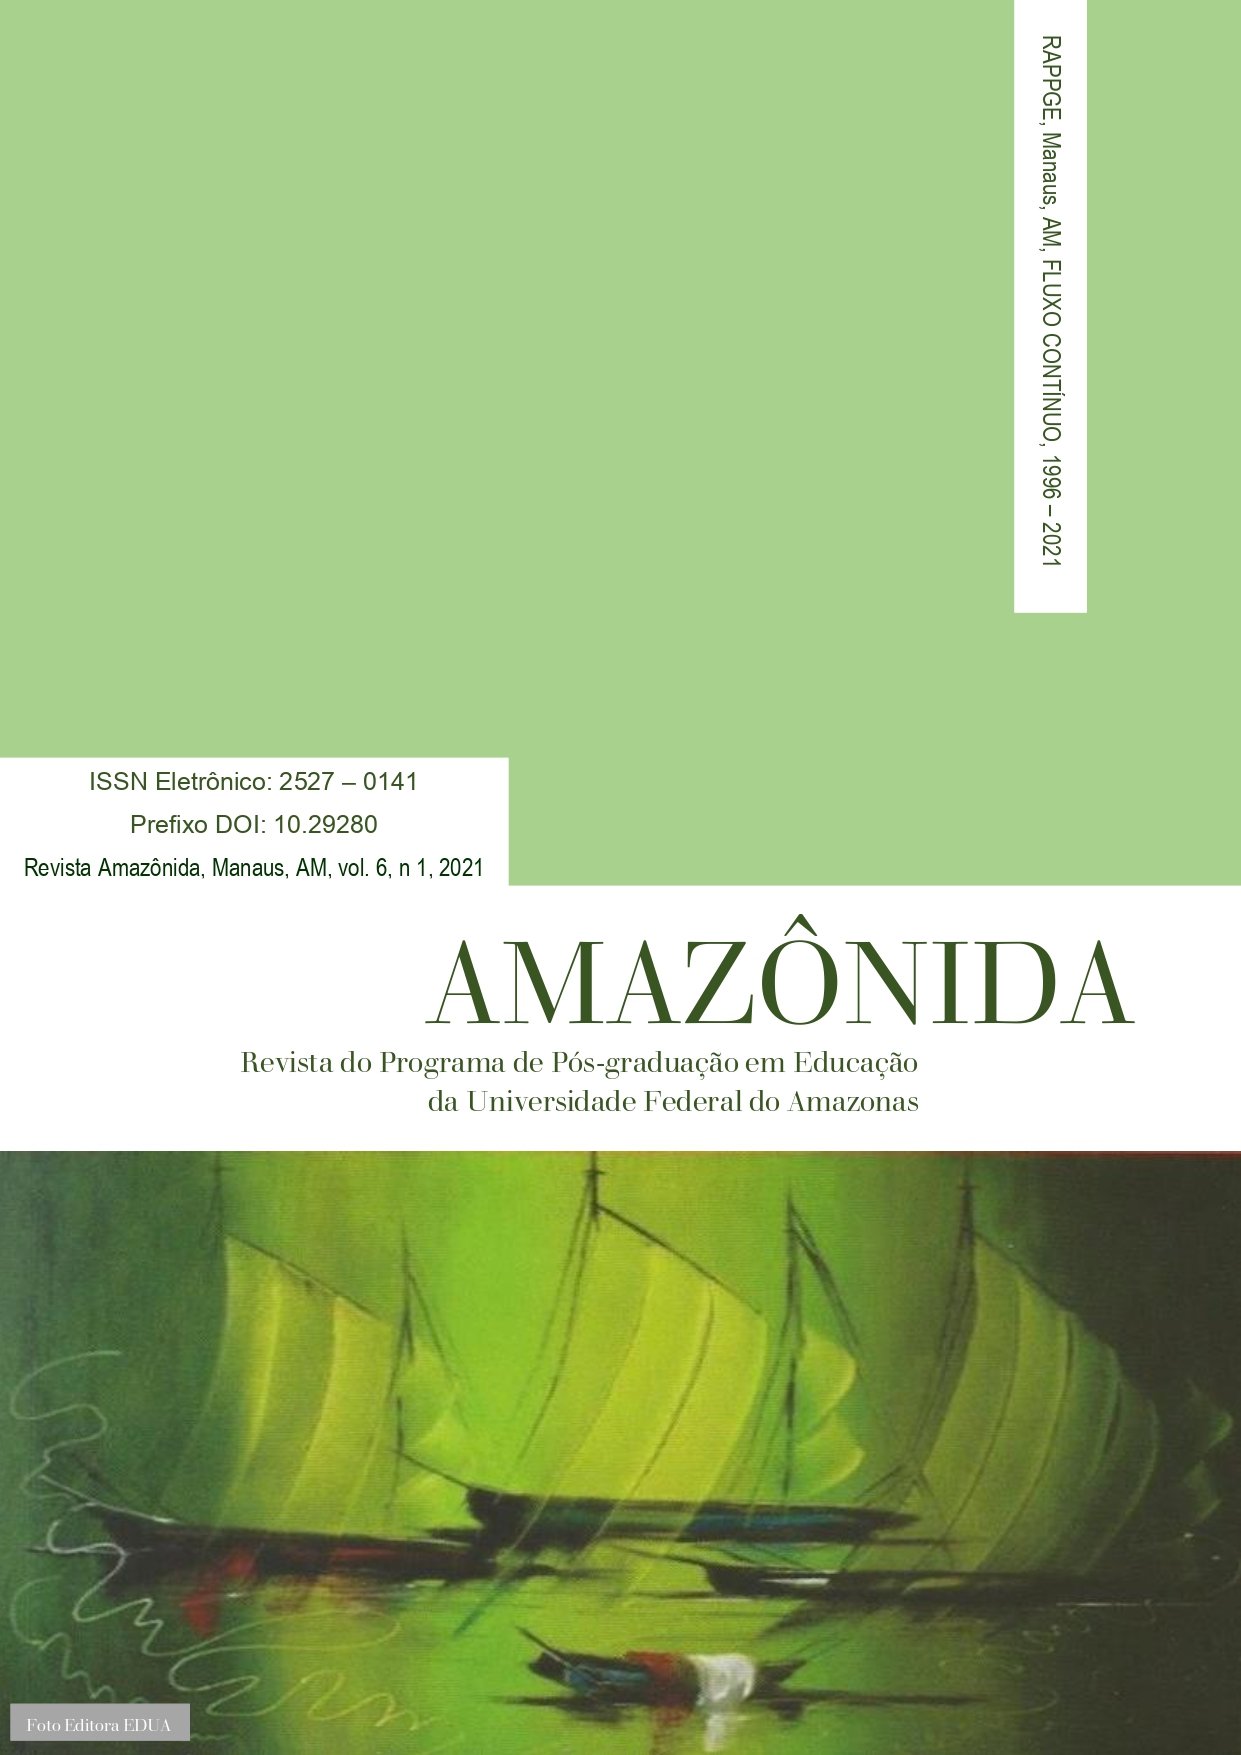 					Ver Vol. 6 Núm. 01 (2021): Revista Amazônida: Revista do Programa de Pós-Graduação em Educação da Universidade Federal do Amazonas
				